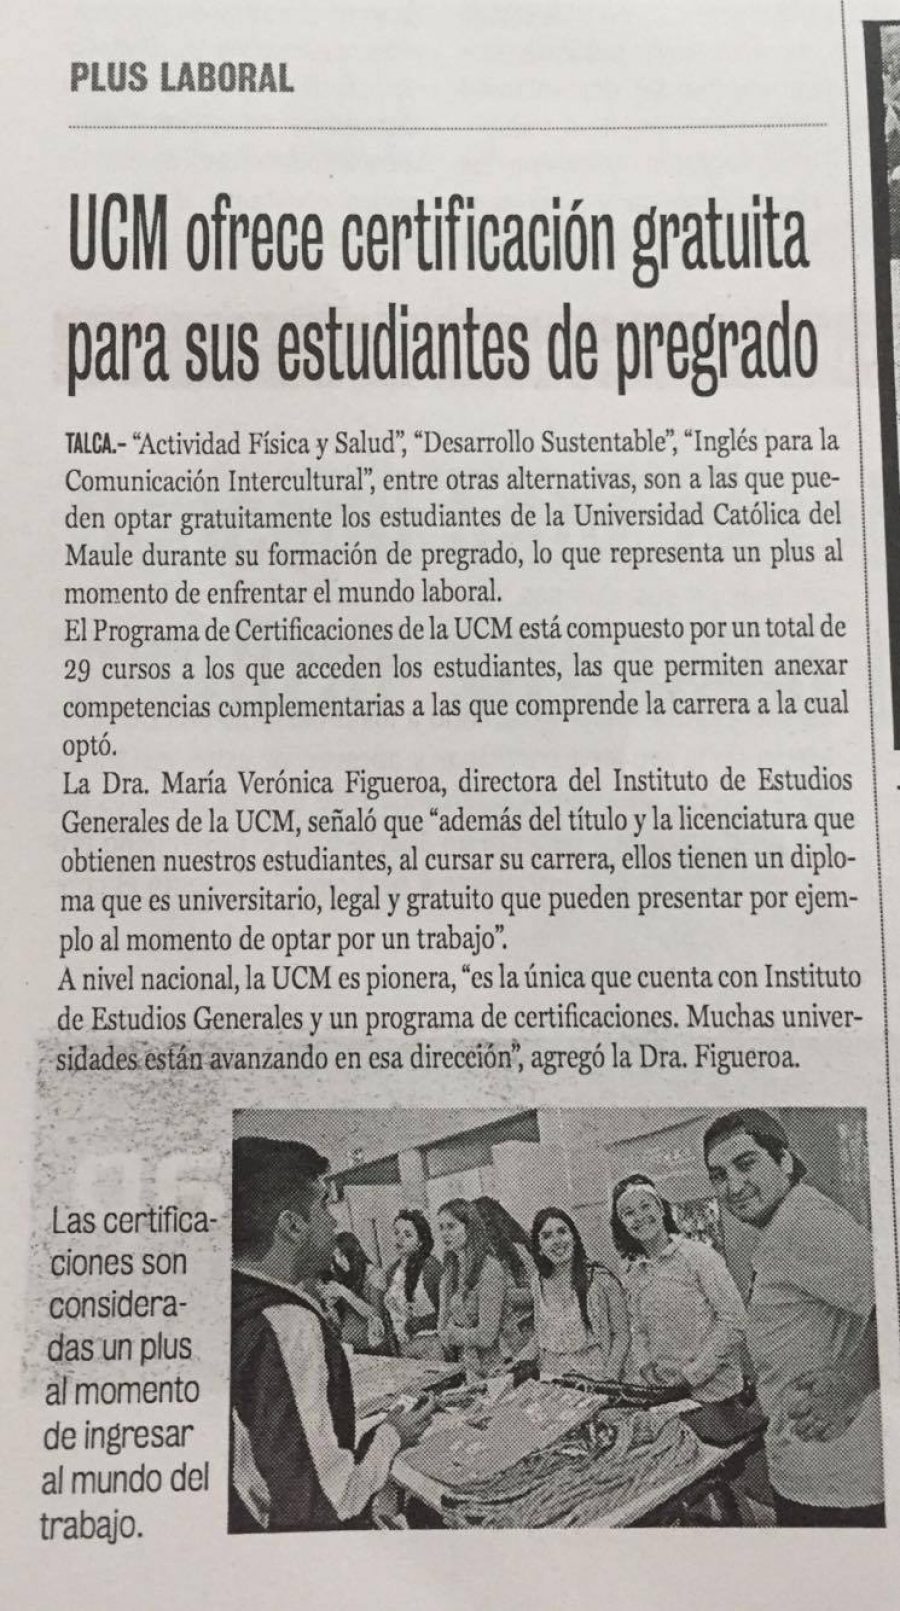 06 de diciembre en Diario La Prensa: “UCM ofrece certificación gratuita para sus estudiantes de pregrado”